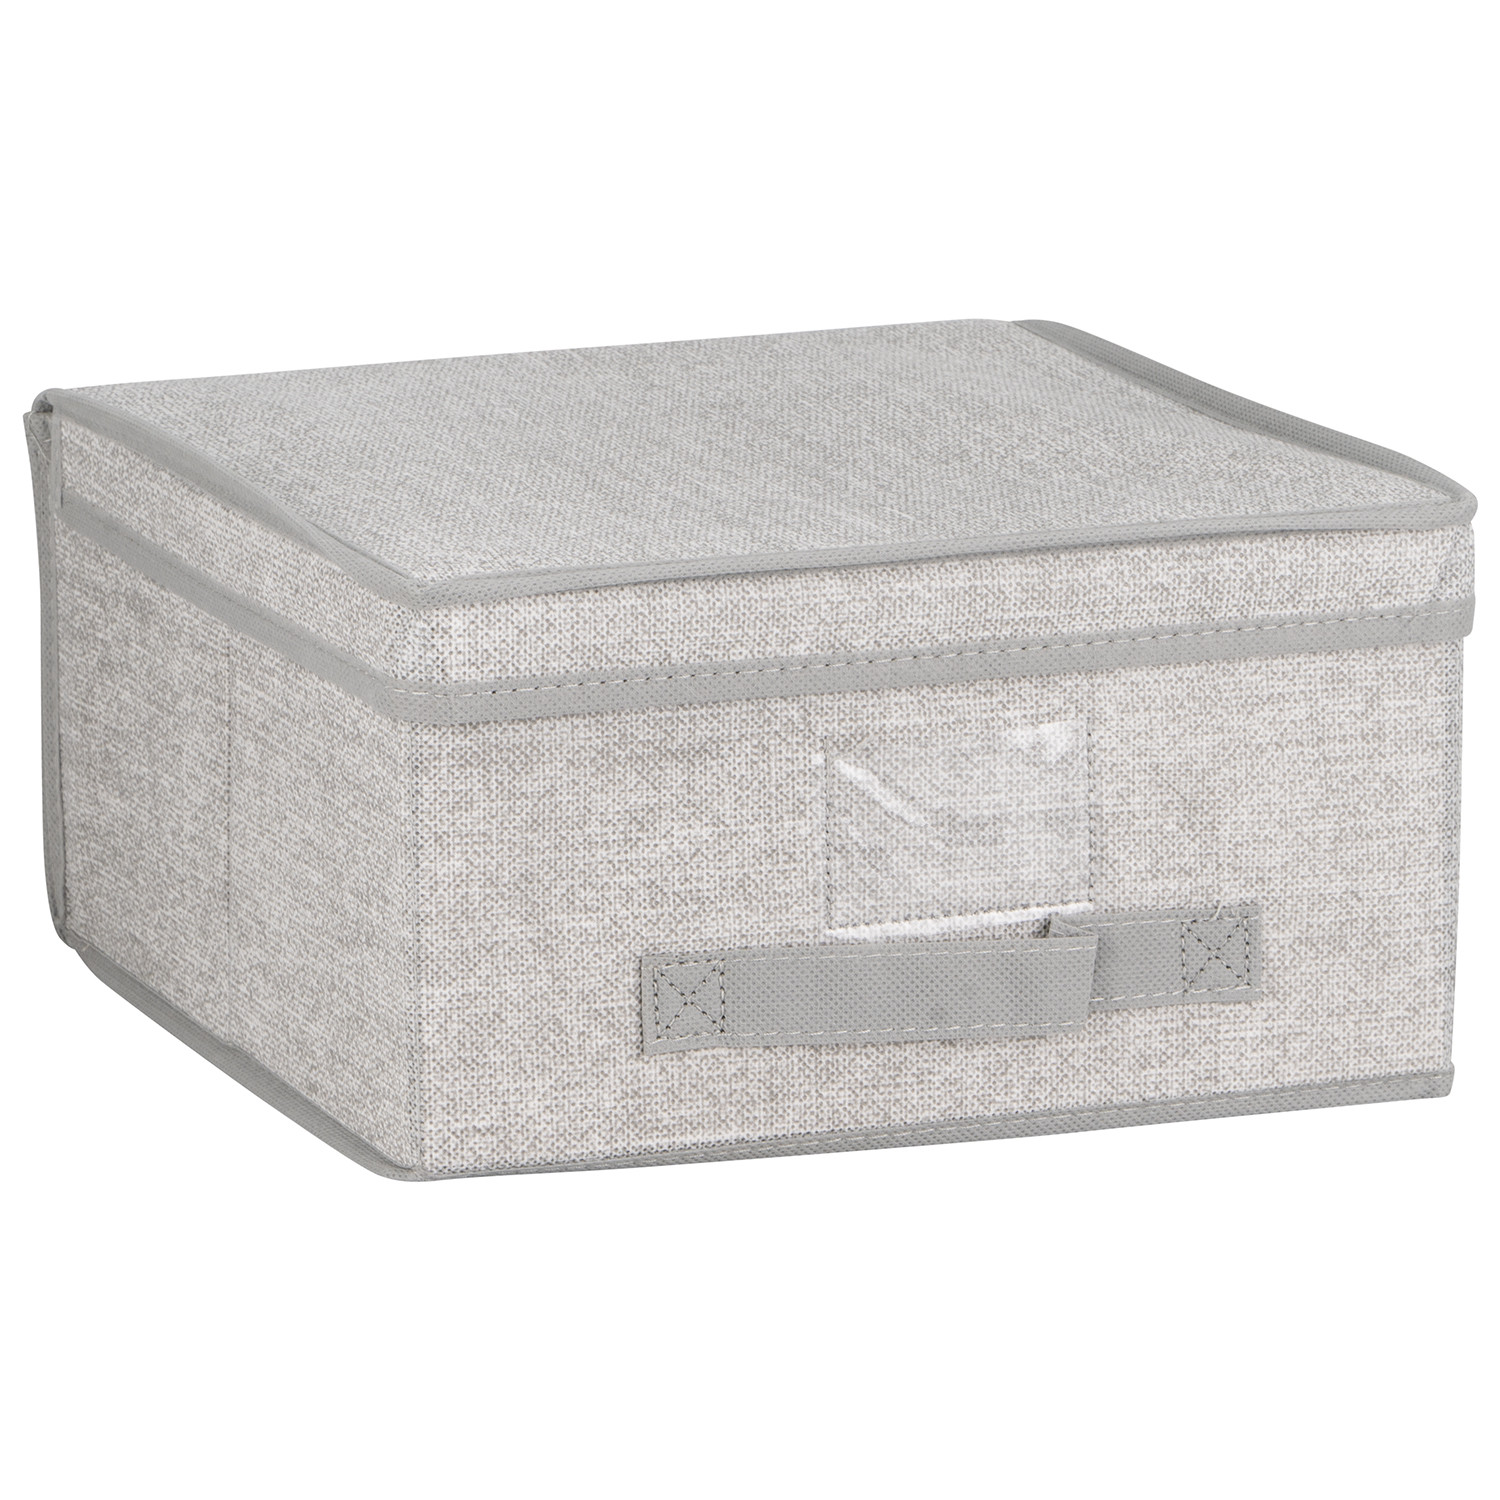 Medium Grey Fabric Foldable Storage Box Image 1